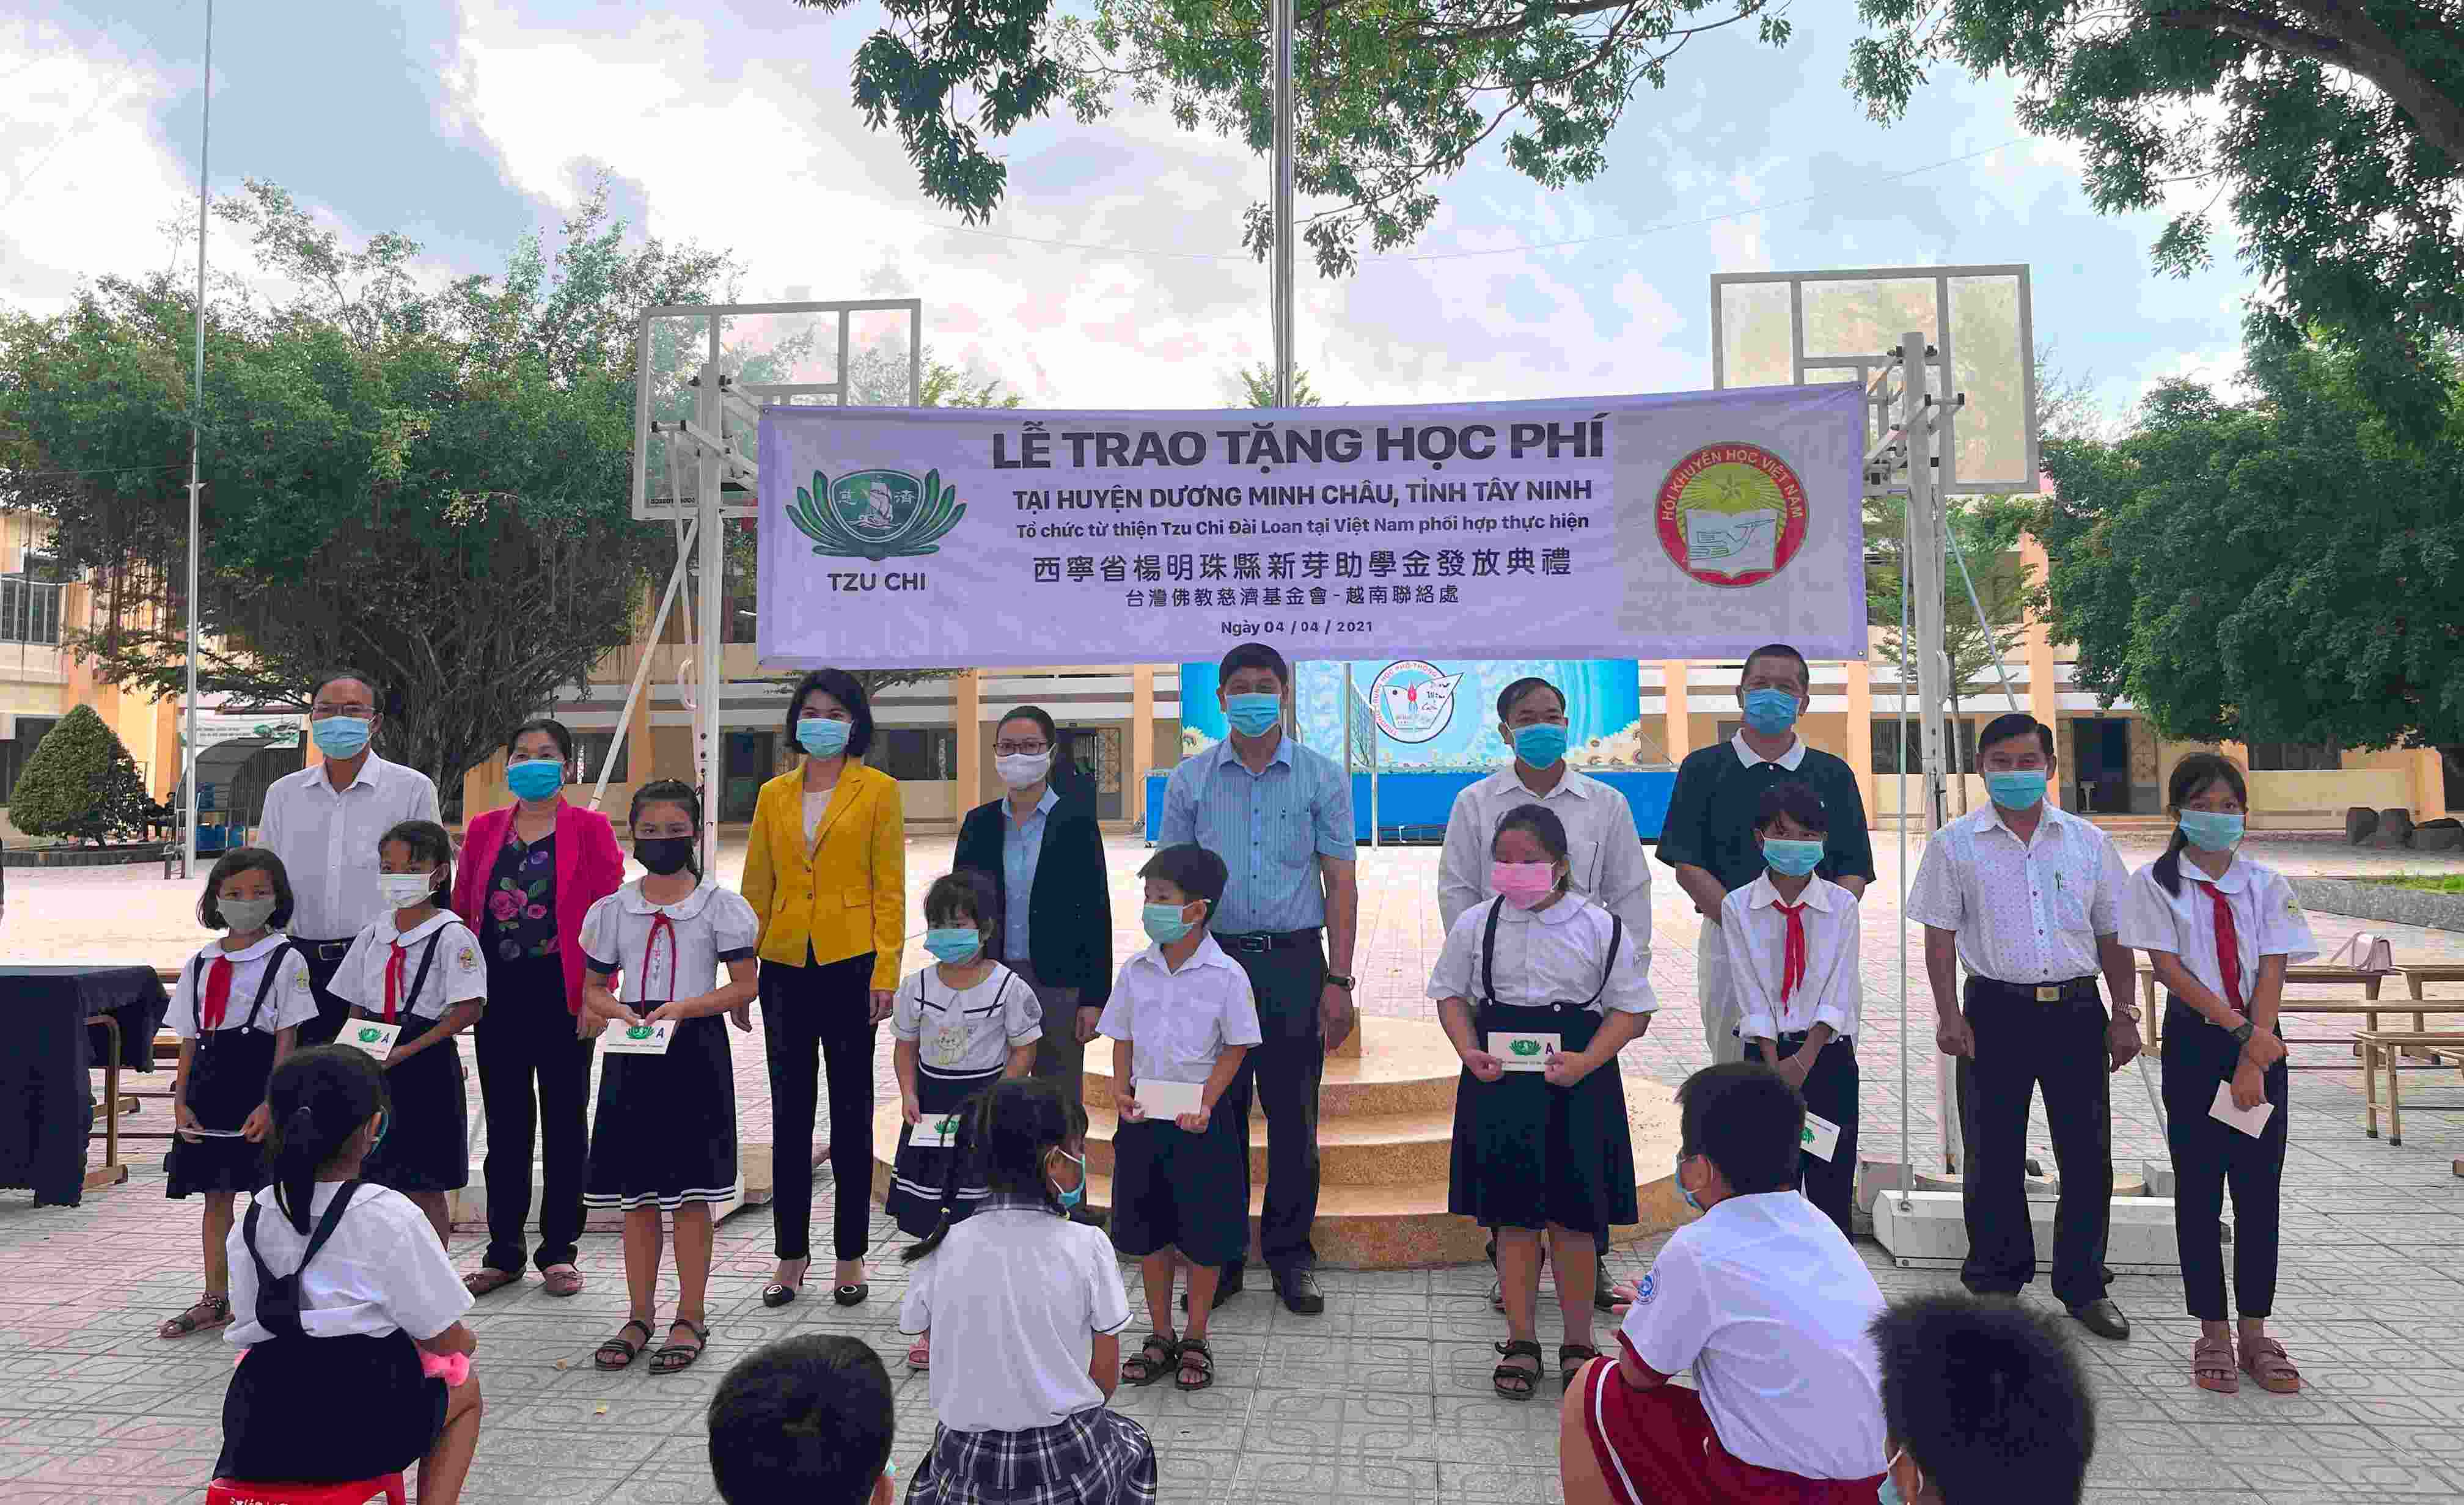 Gần 900 suất học bổng được trao cho học sinh nghèo  ở huyện Dương Minh Châu